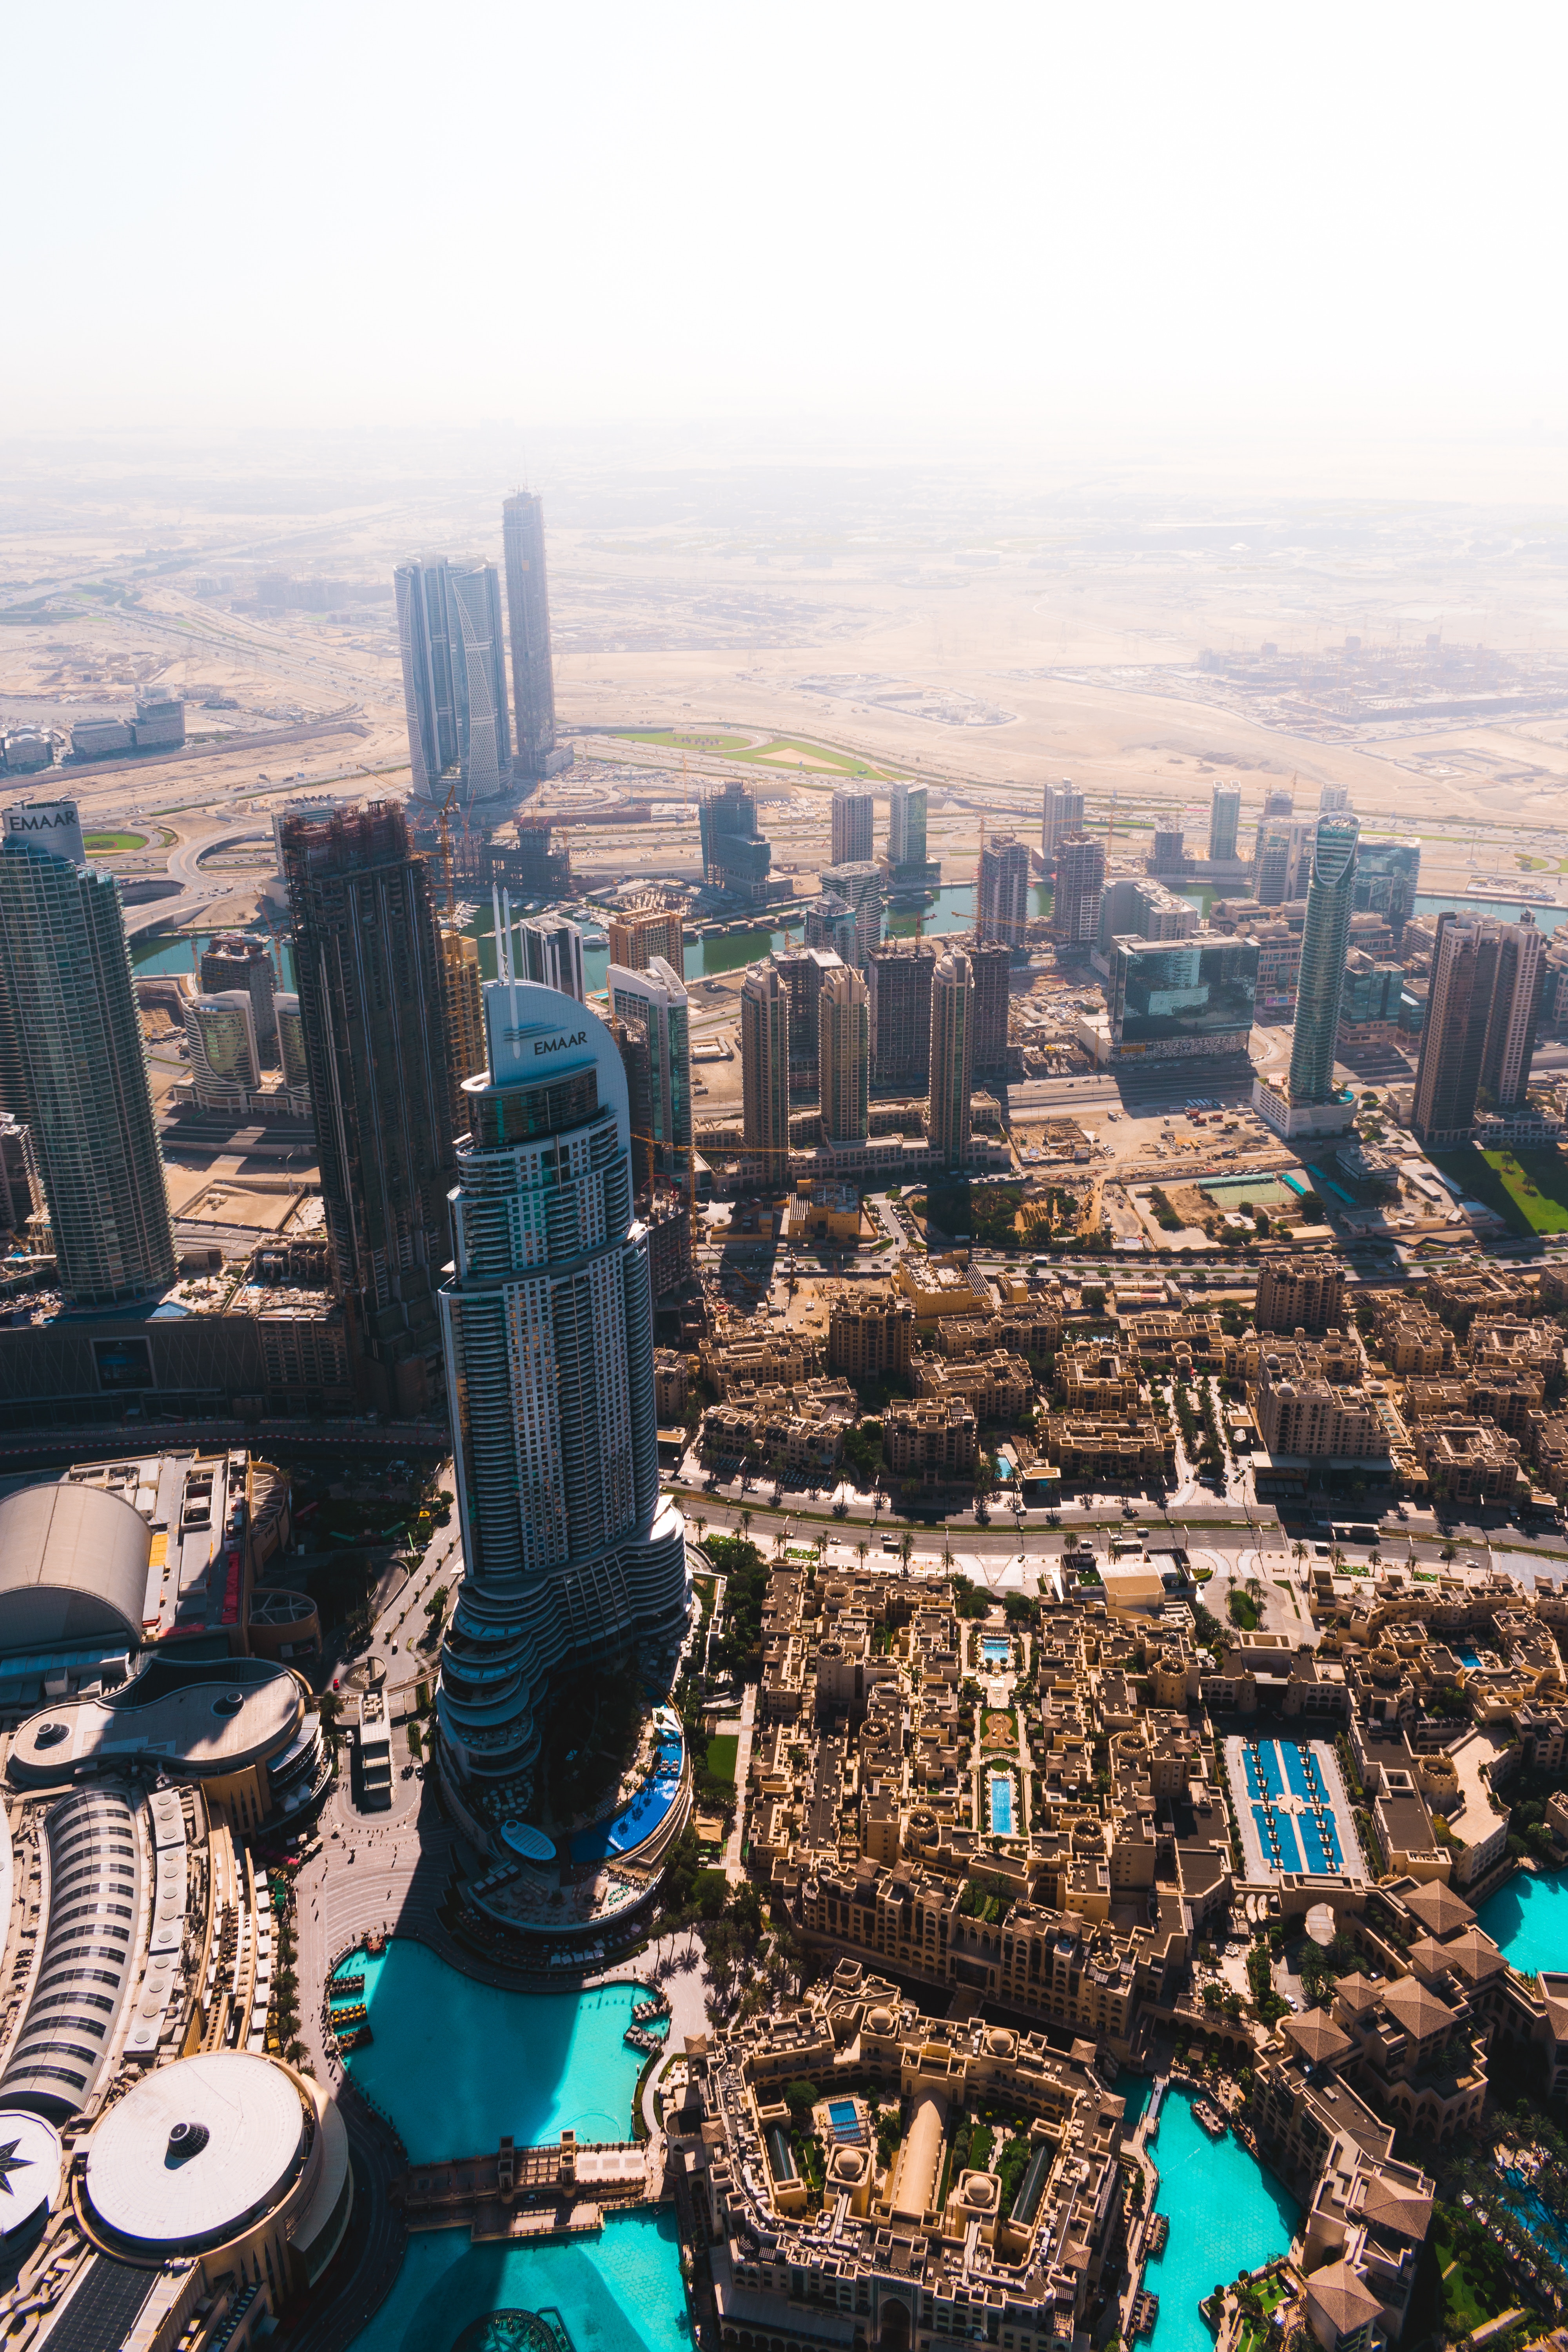 Burj Khalifa Picture by Yong Chuan